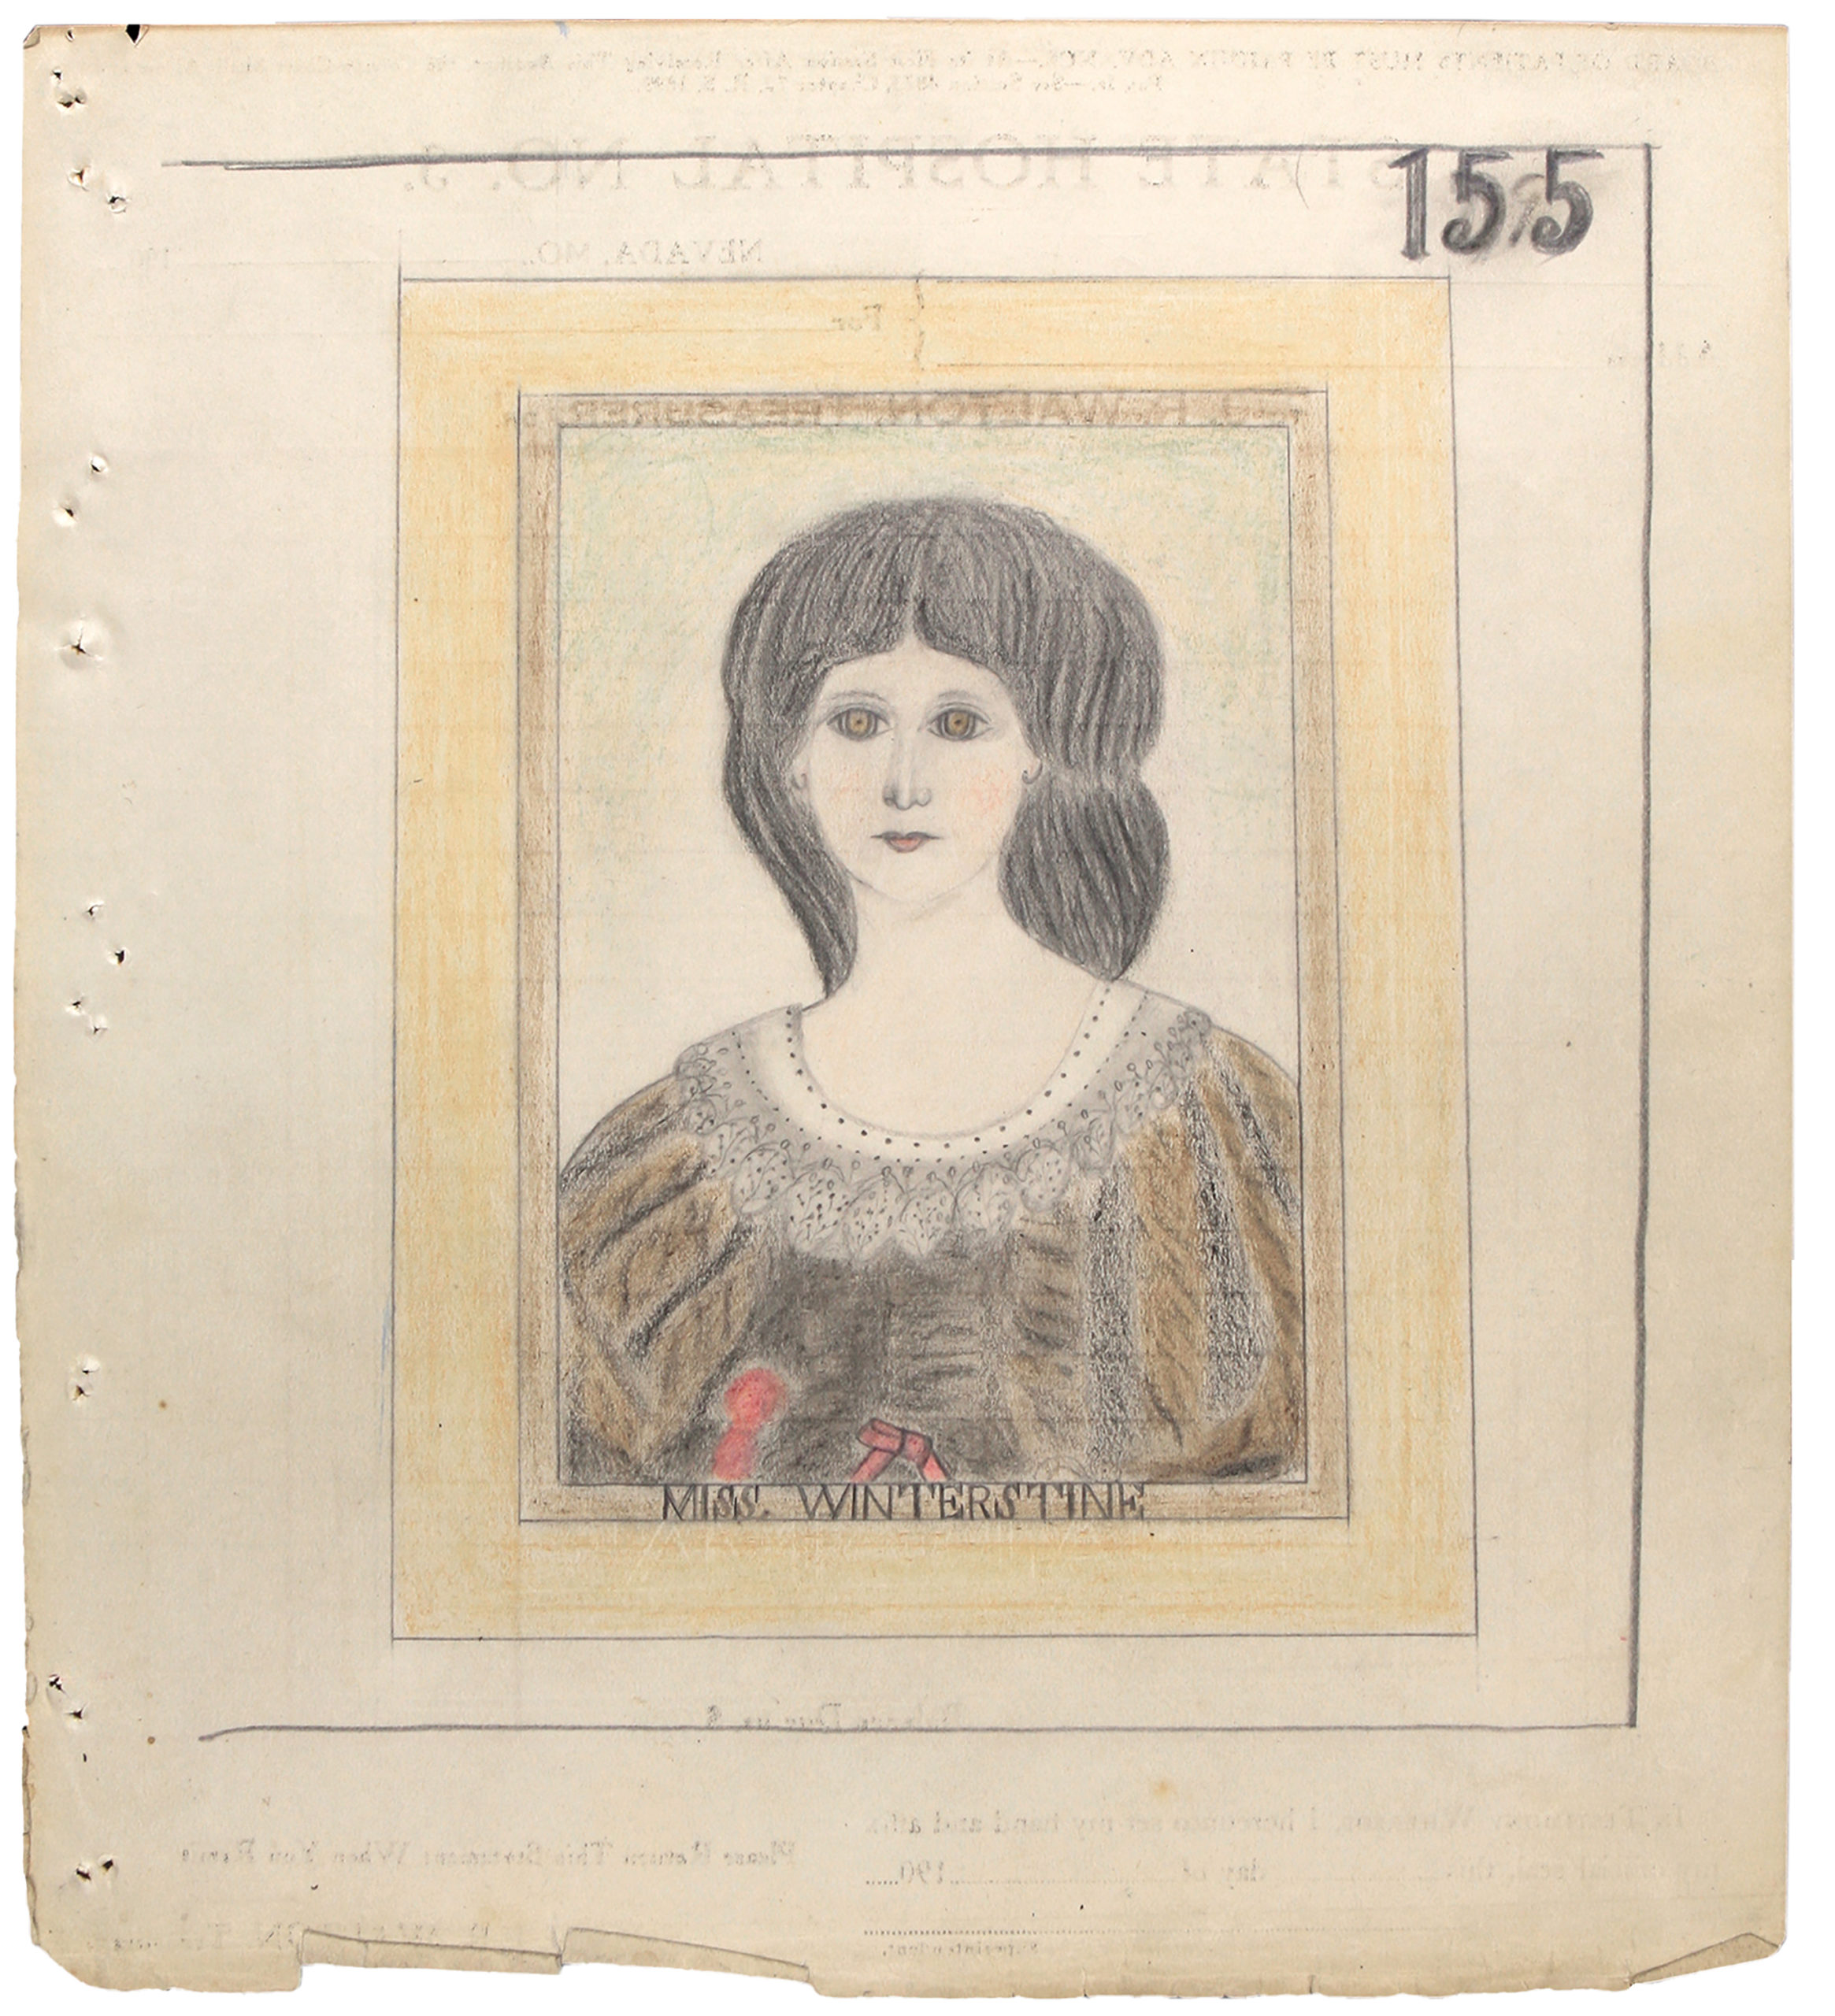 portrait d'une jeune femme au 19ème siècle. Buste avec des cheveux longs noirs.